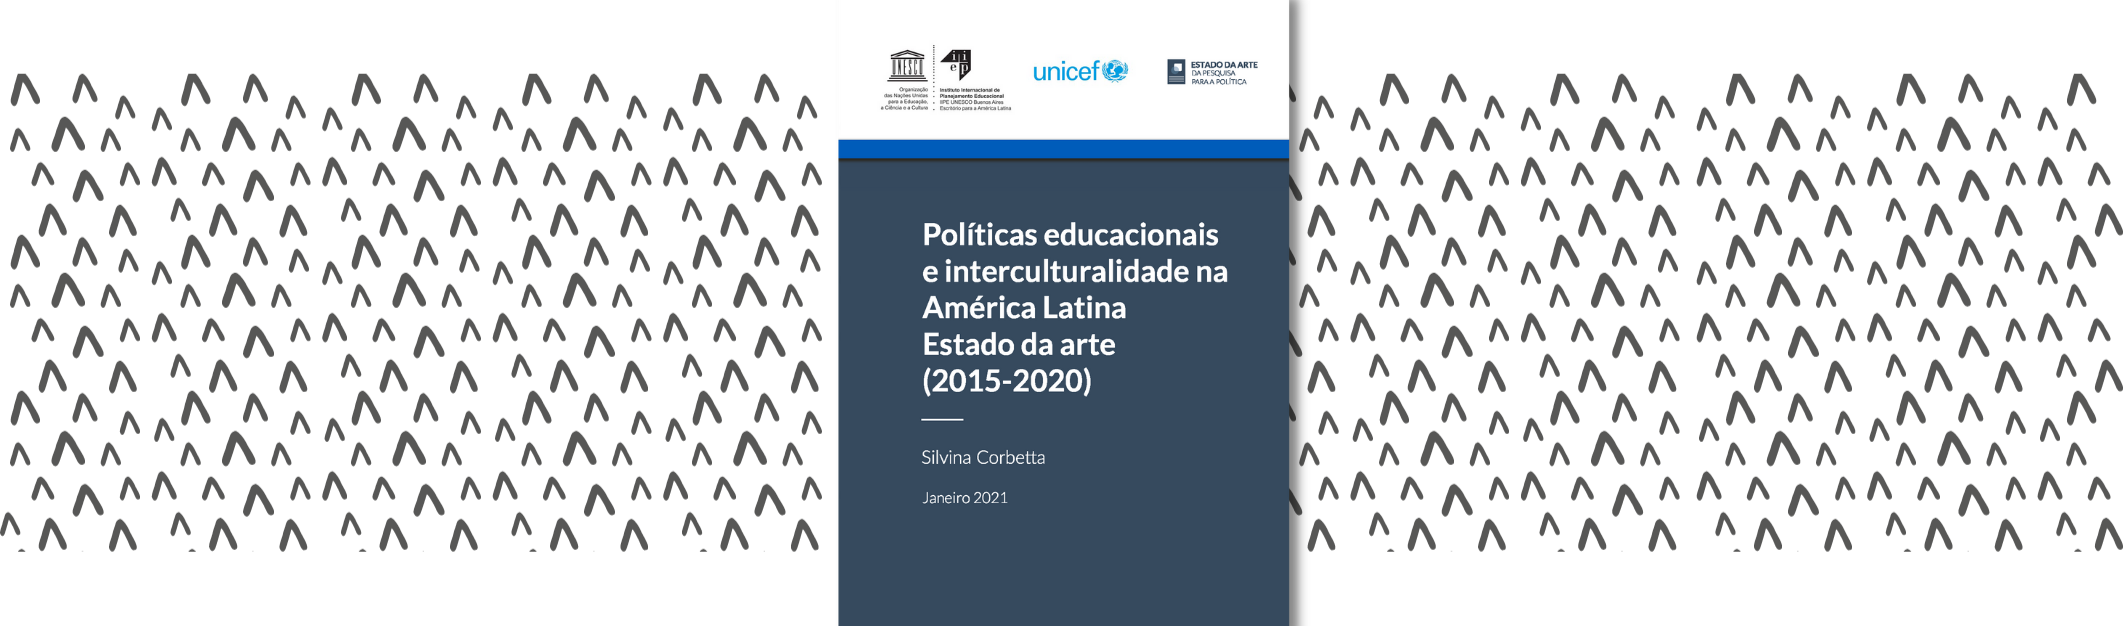 Políticas educacionais e interculturalidade na América Latina: estado da arte (2015-2020)